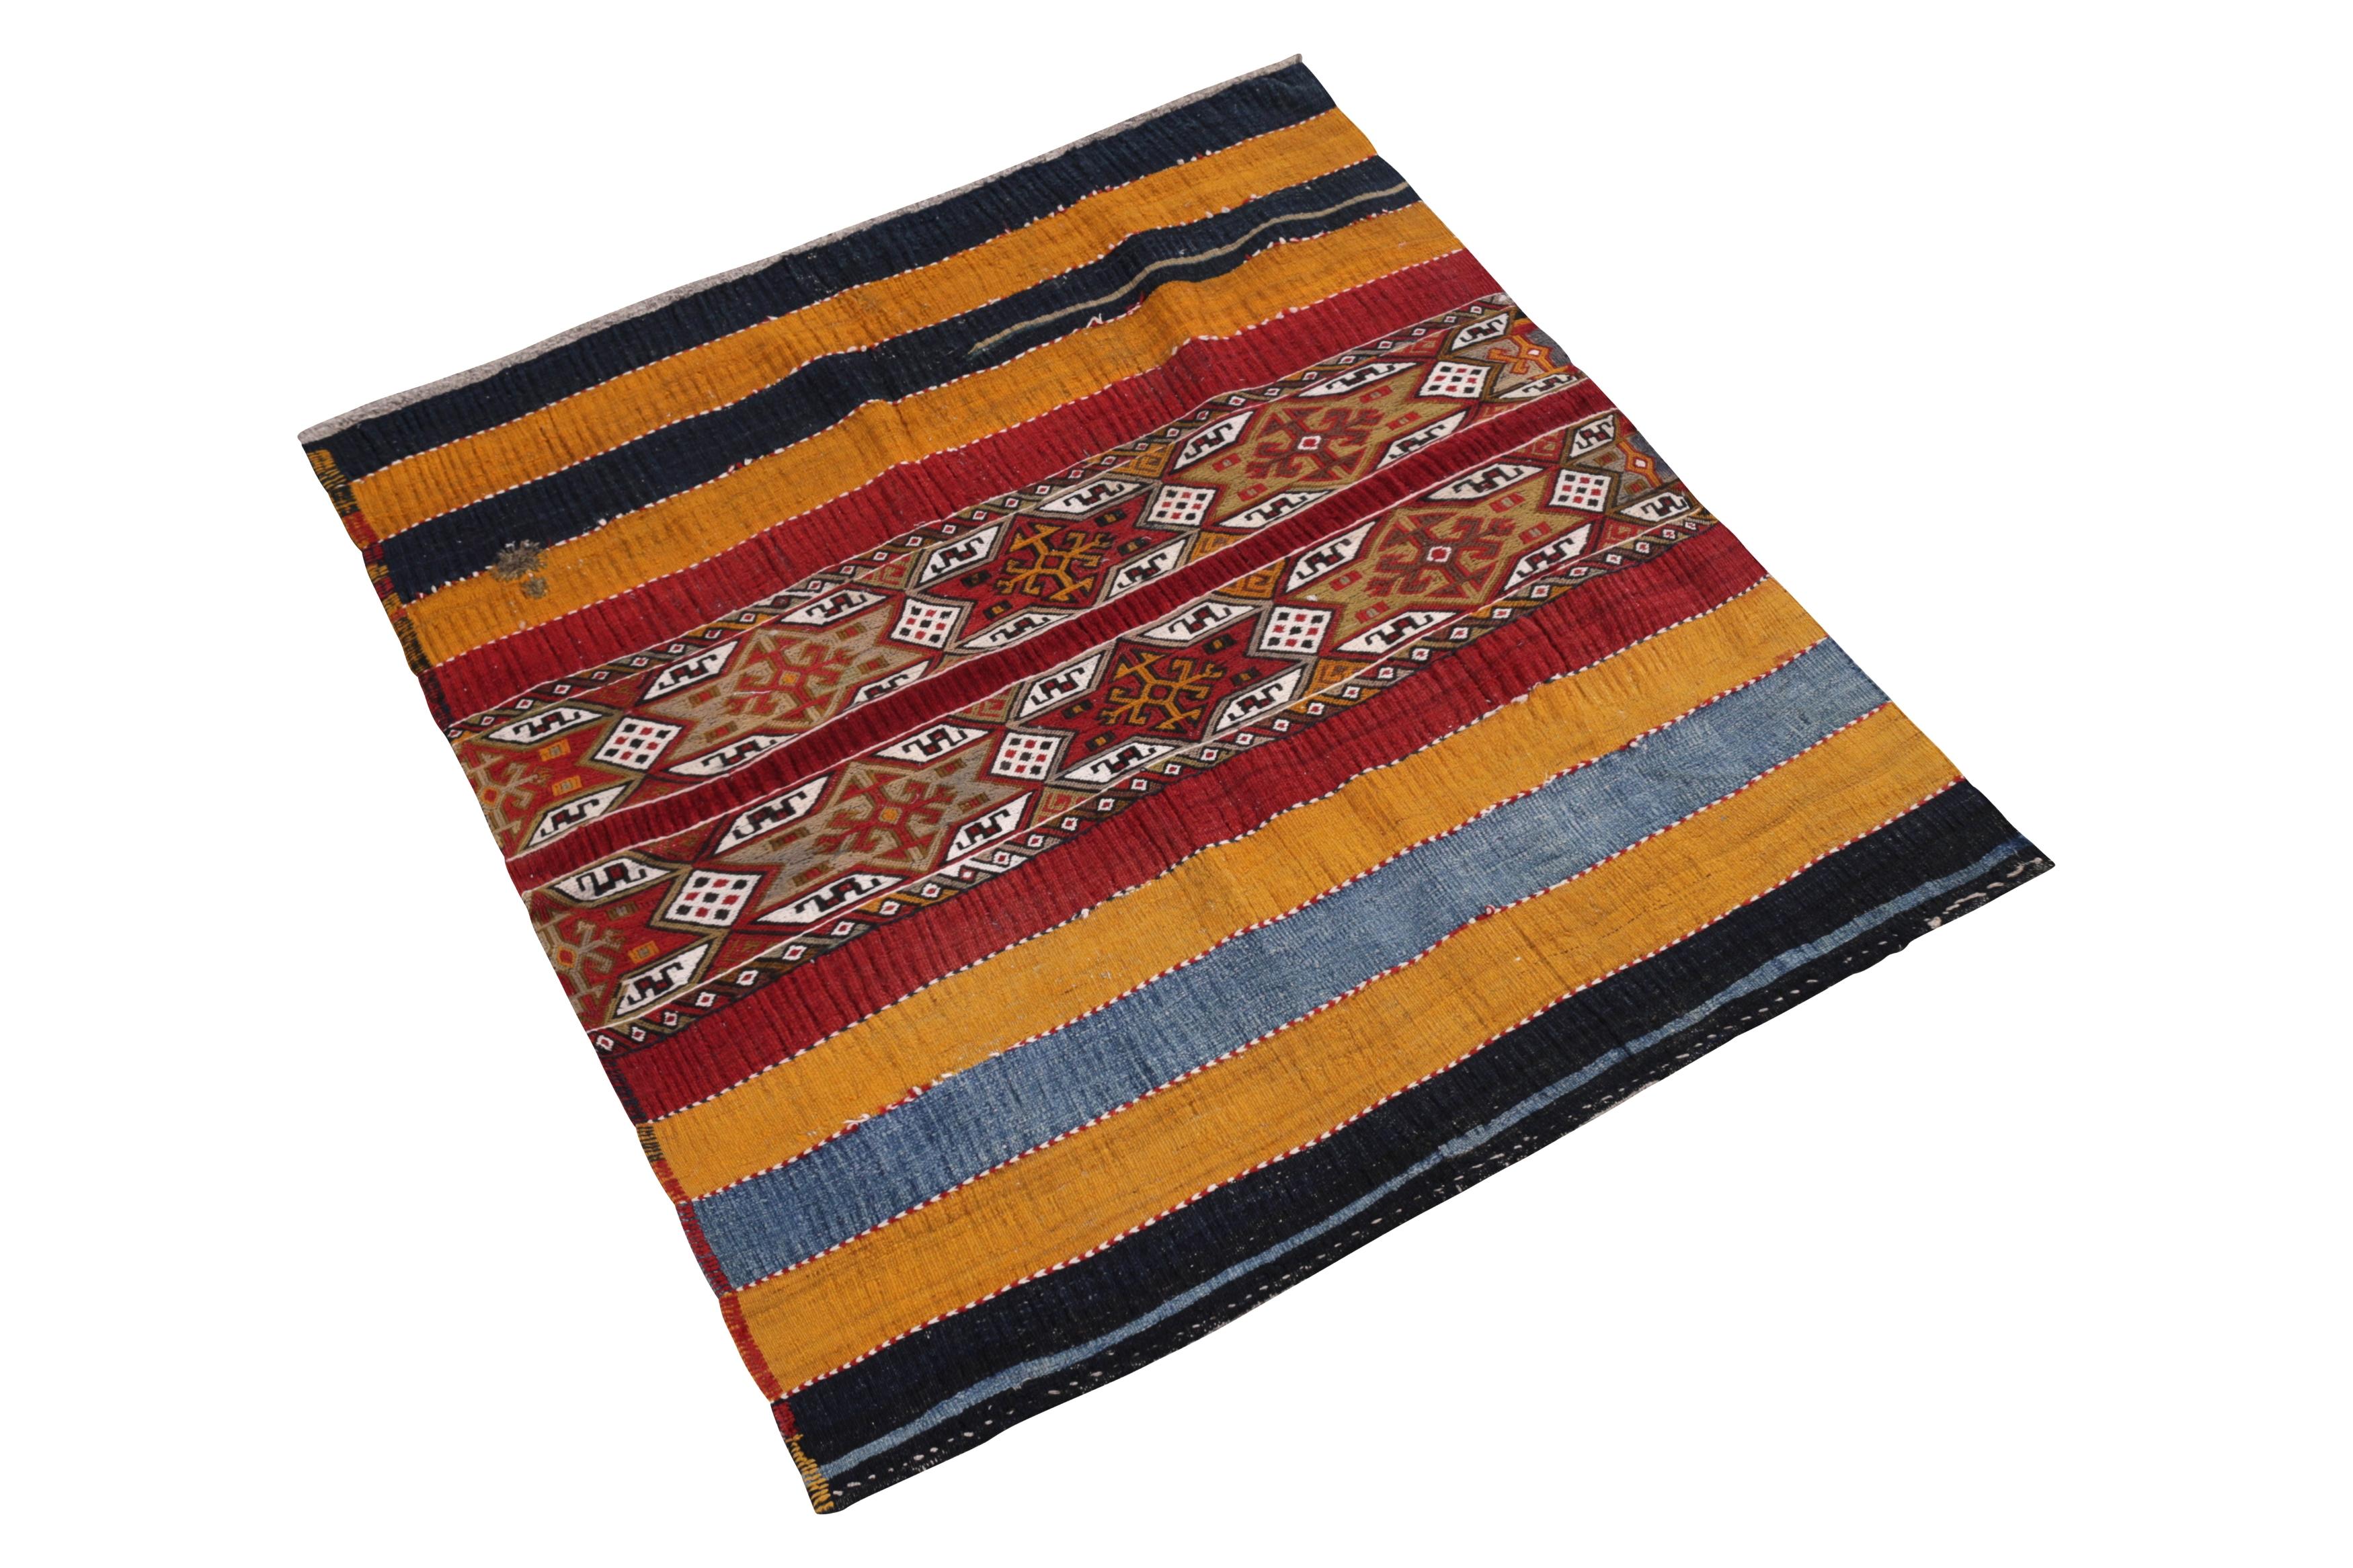 Dieser antike, handgeknüpfte Wollteppich aus der Türkei (ca. 1900-1910) erinnert an ein traditionelles kurdisches Teppichdesign mit einer groben, üppigen Knüpfung in den satteren Farbtönen, die von feinen weißen Stickereistreifen an den Nähten